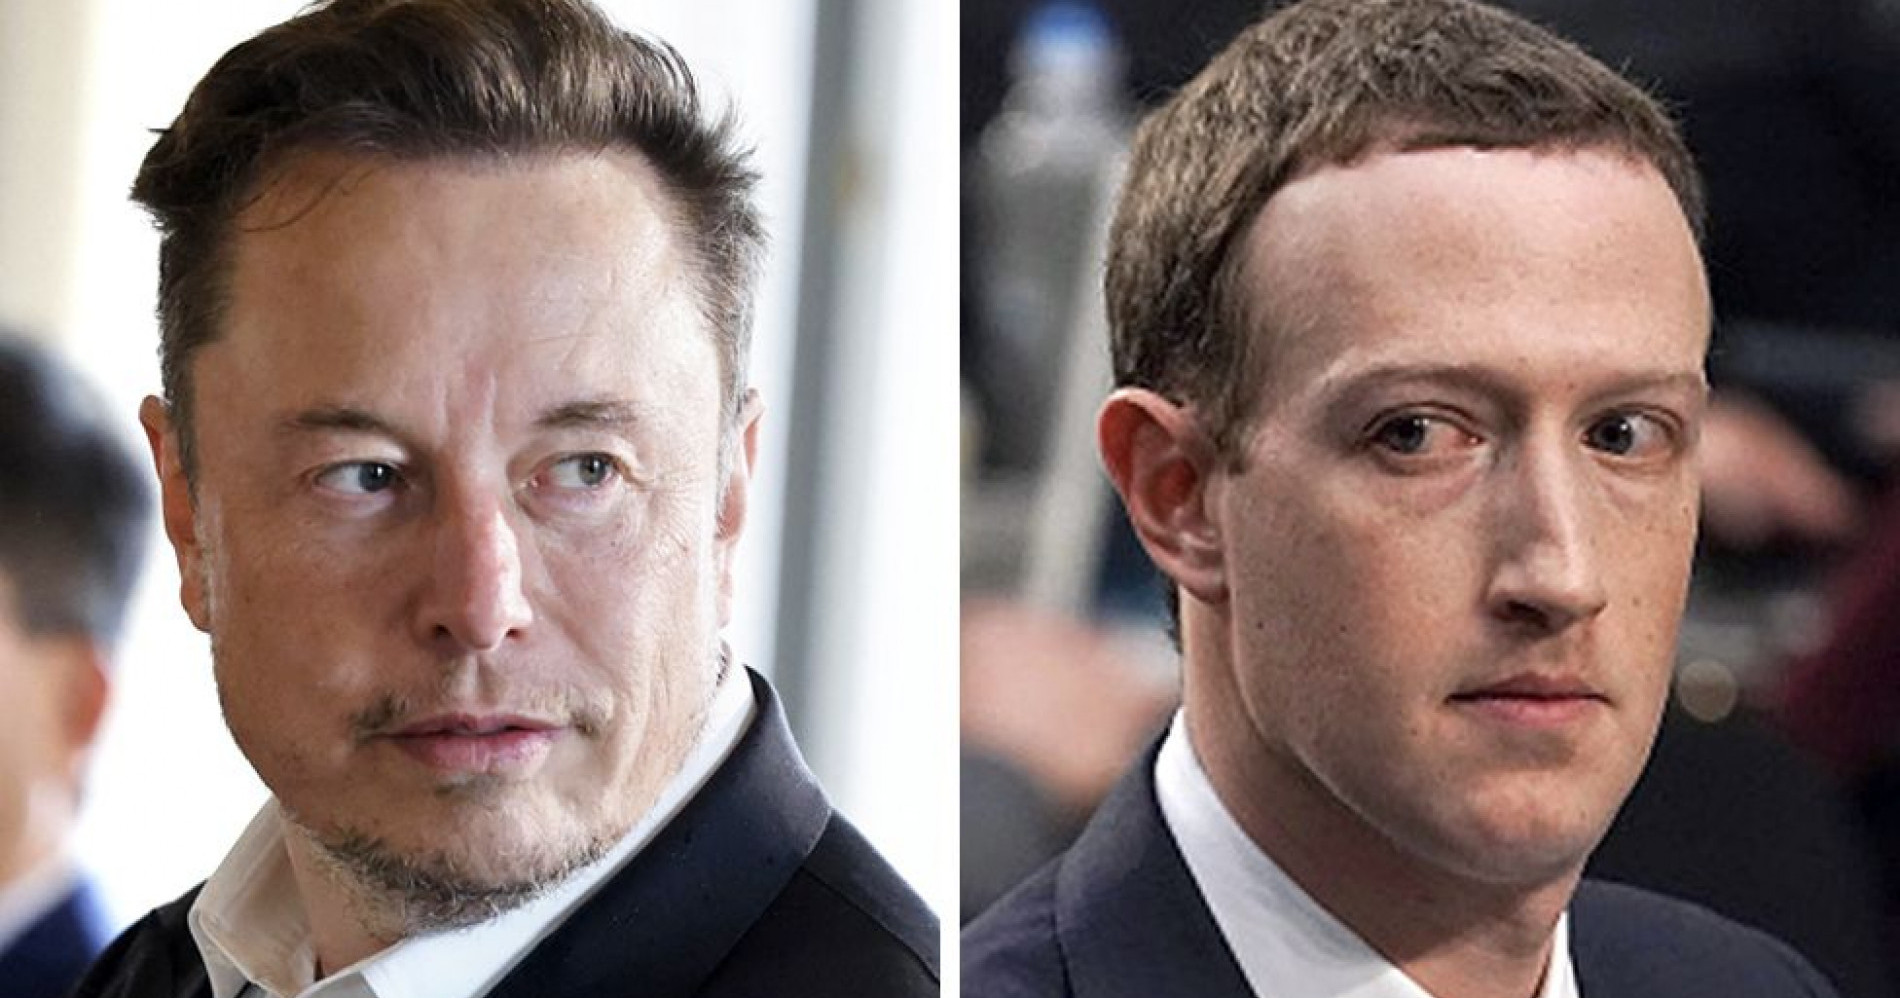 Elon Musk dan Mark Zuckerberg pengusaha hebat di industri teknologi dikabarkan akan adu fisik (Sumber Gambar: BBC)